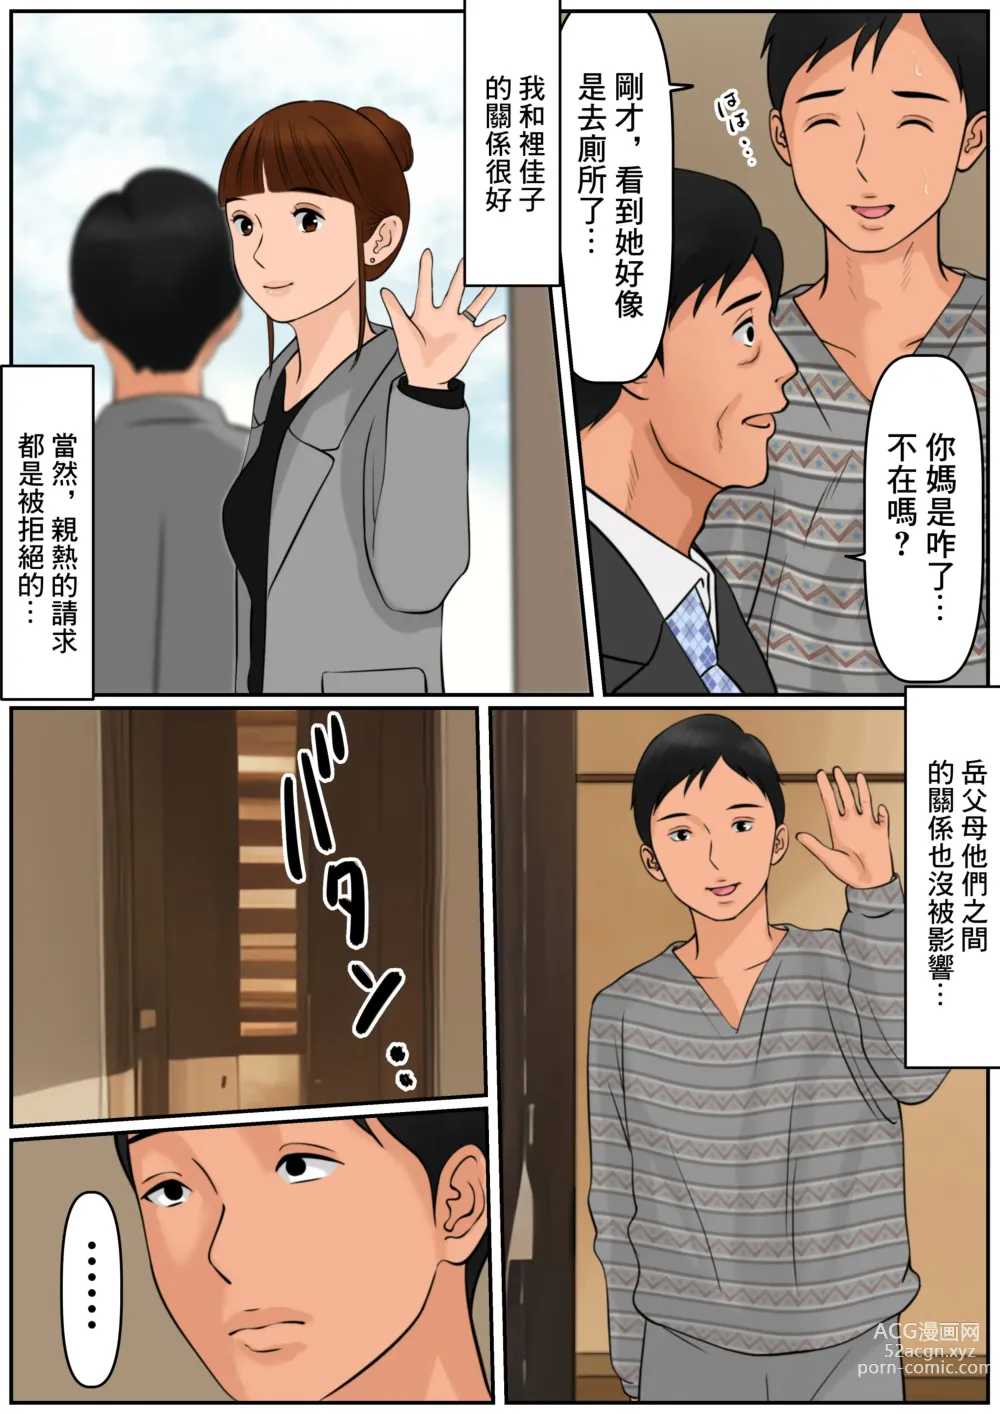 Page 38 of doujinshi 難道你是嫌棄我這個媽媽嗎?